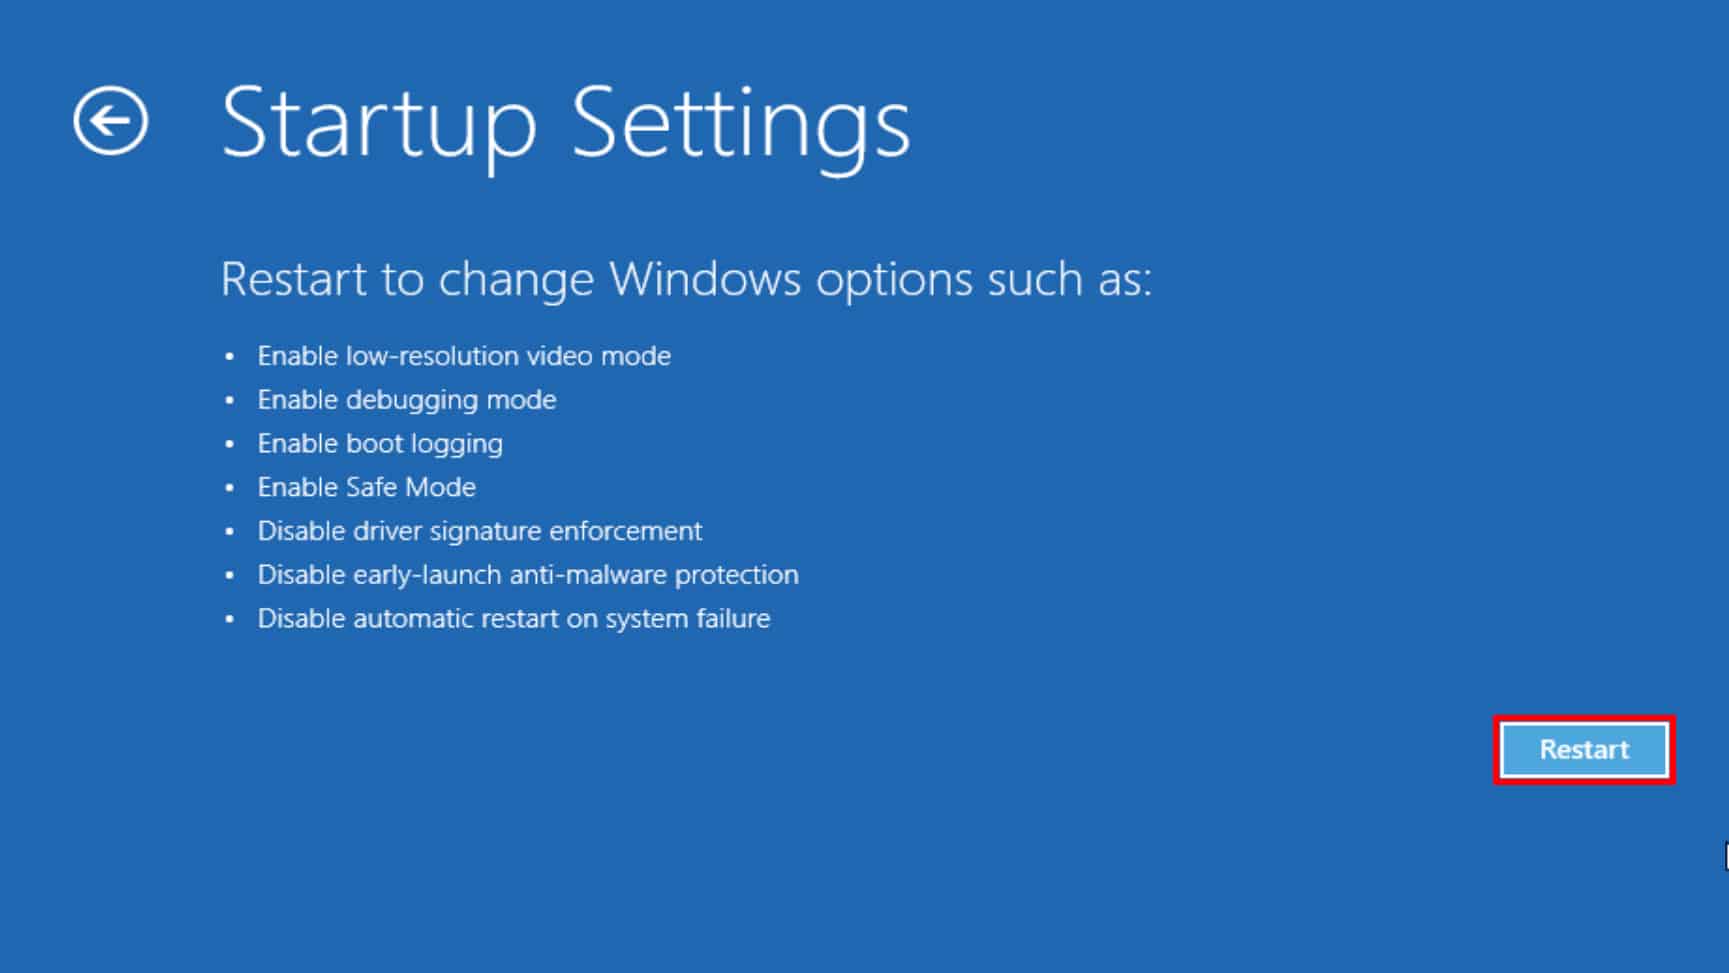 Windows 10 startup settings restart